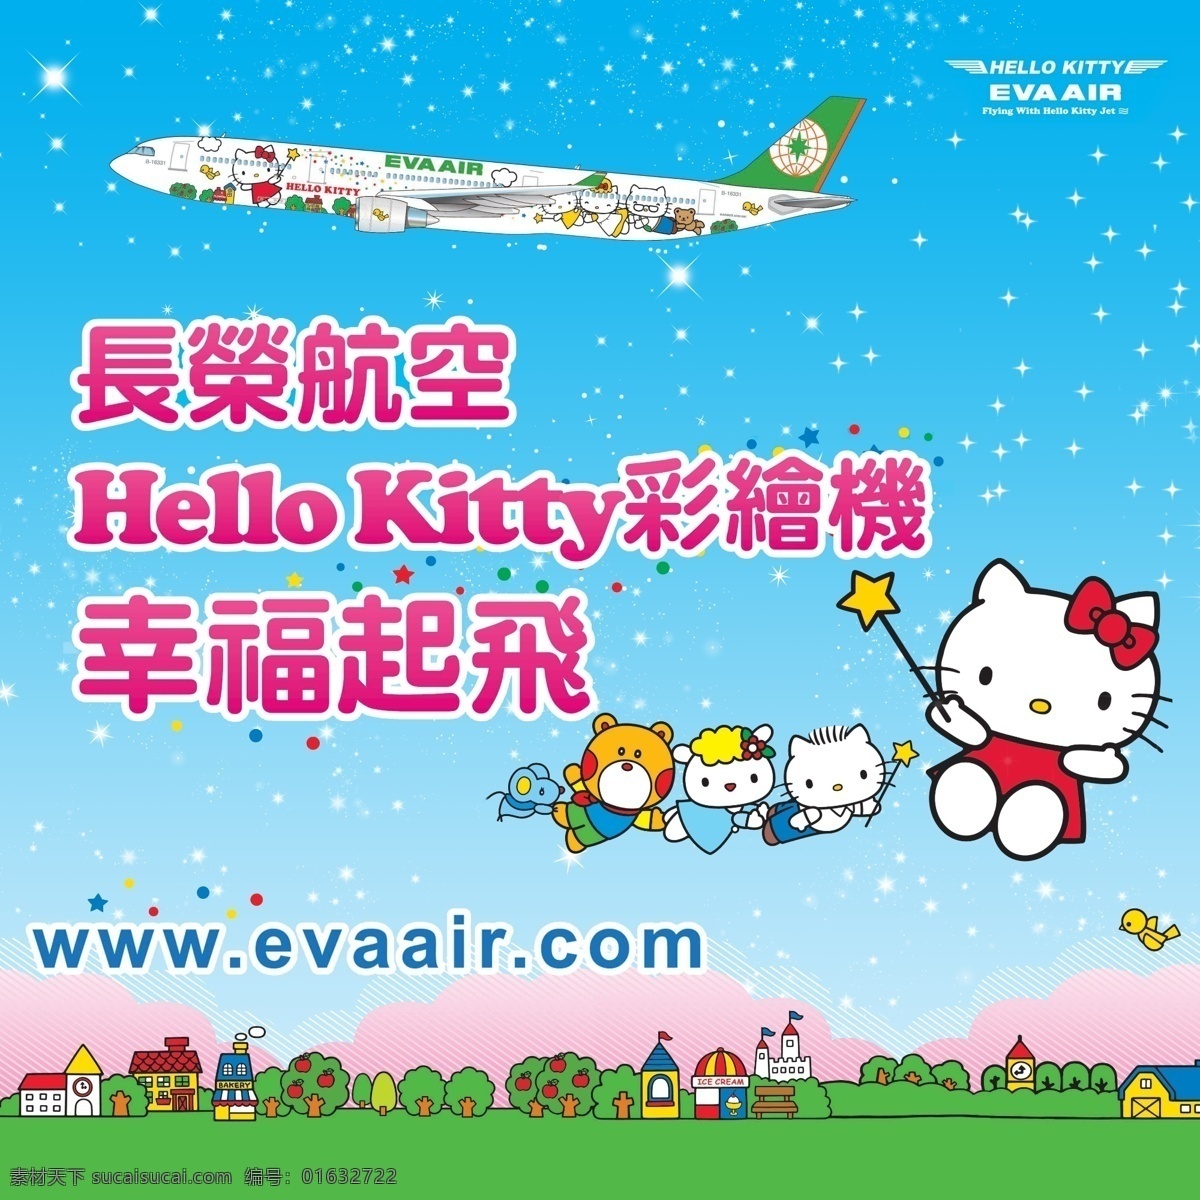 立荣航空公司 卡通宣传海报 宣传 航空 海报 风景 旅行 hello kitty